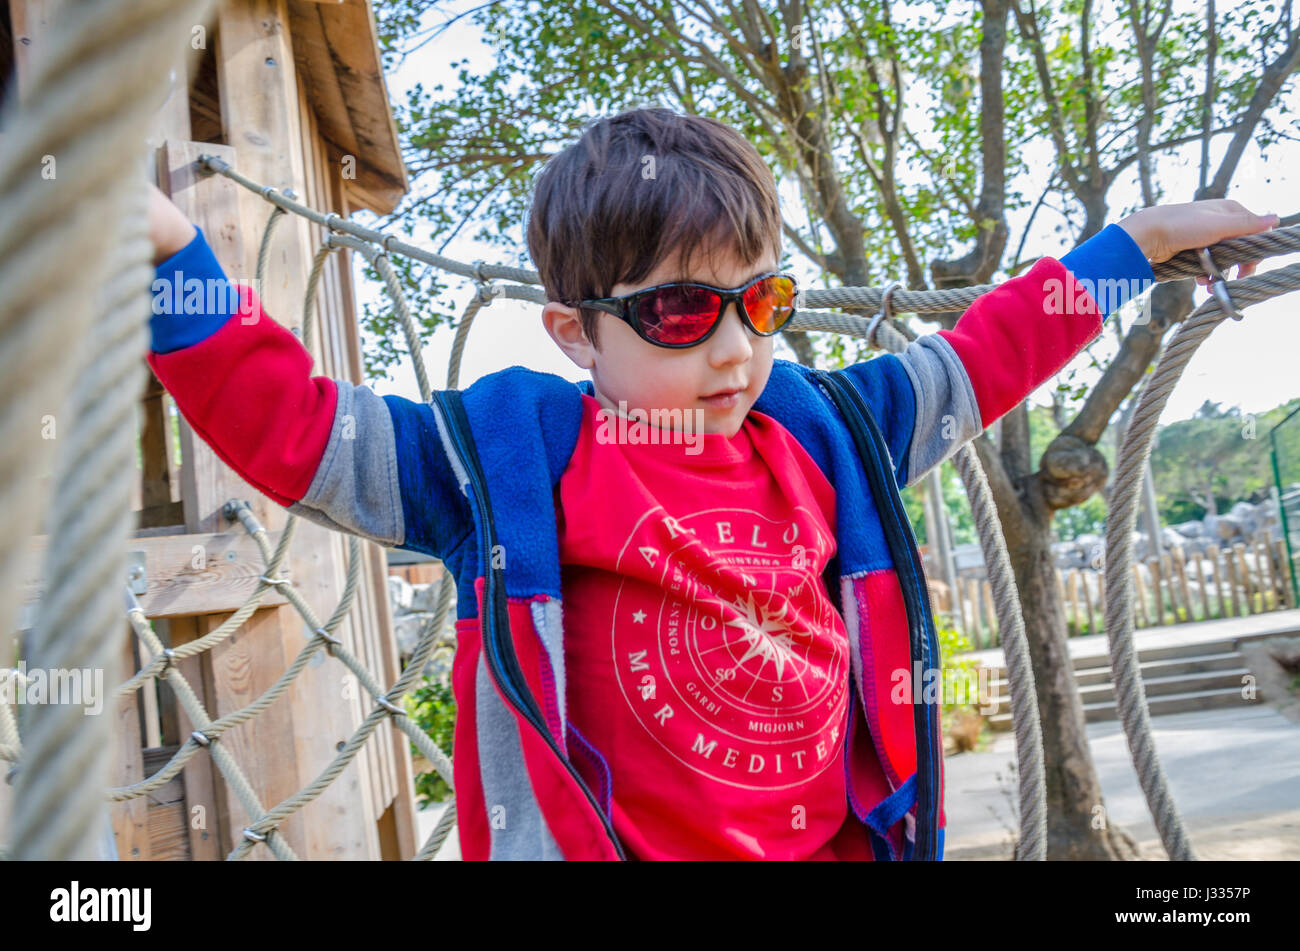 Un joven cruza un puente de cuerdas, que es parte de una trama de escalada en un playground para niños. Foto de stock